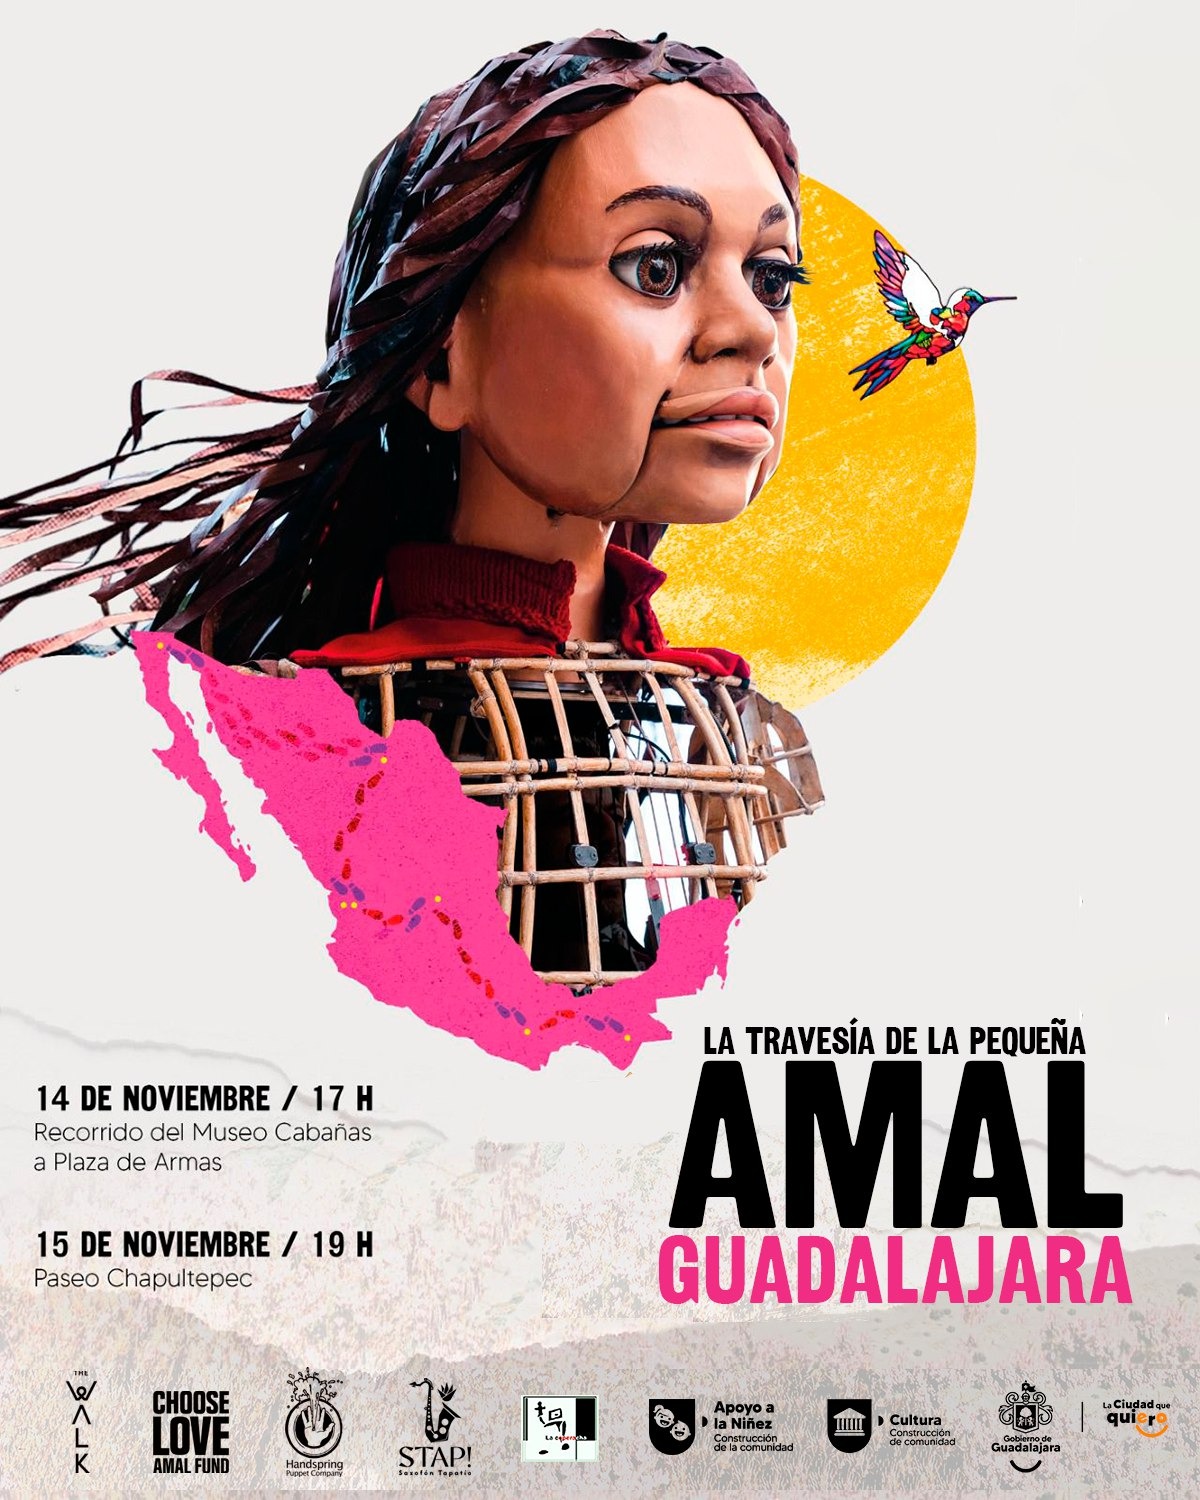 Para representar a las personas refugiadas, la marioneta de La Pequeña Amal visitará Guadalajara el 14 de noviembre